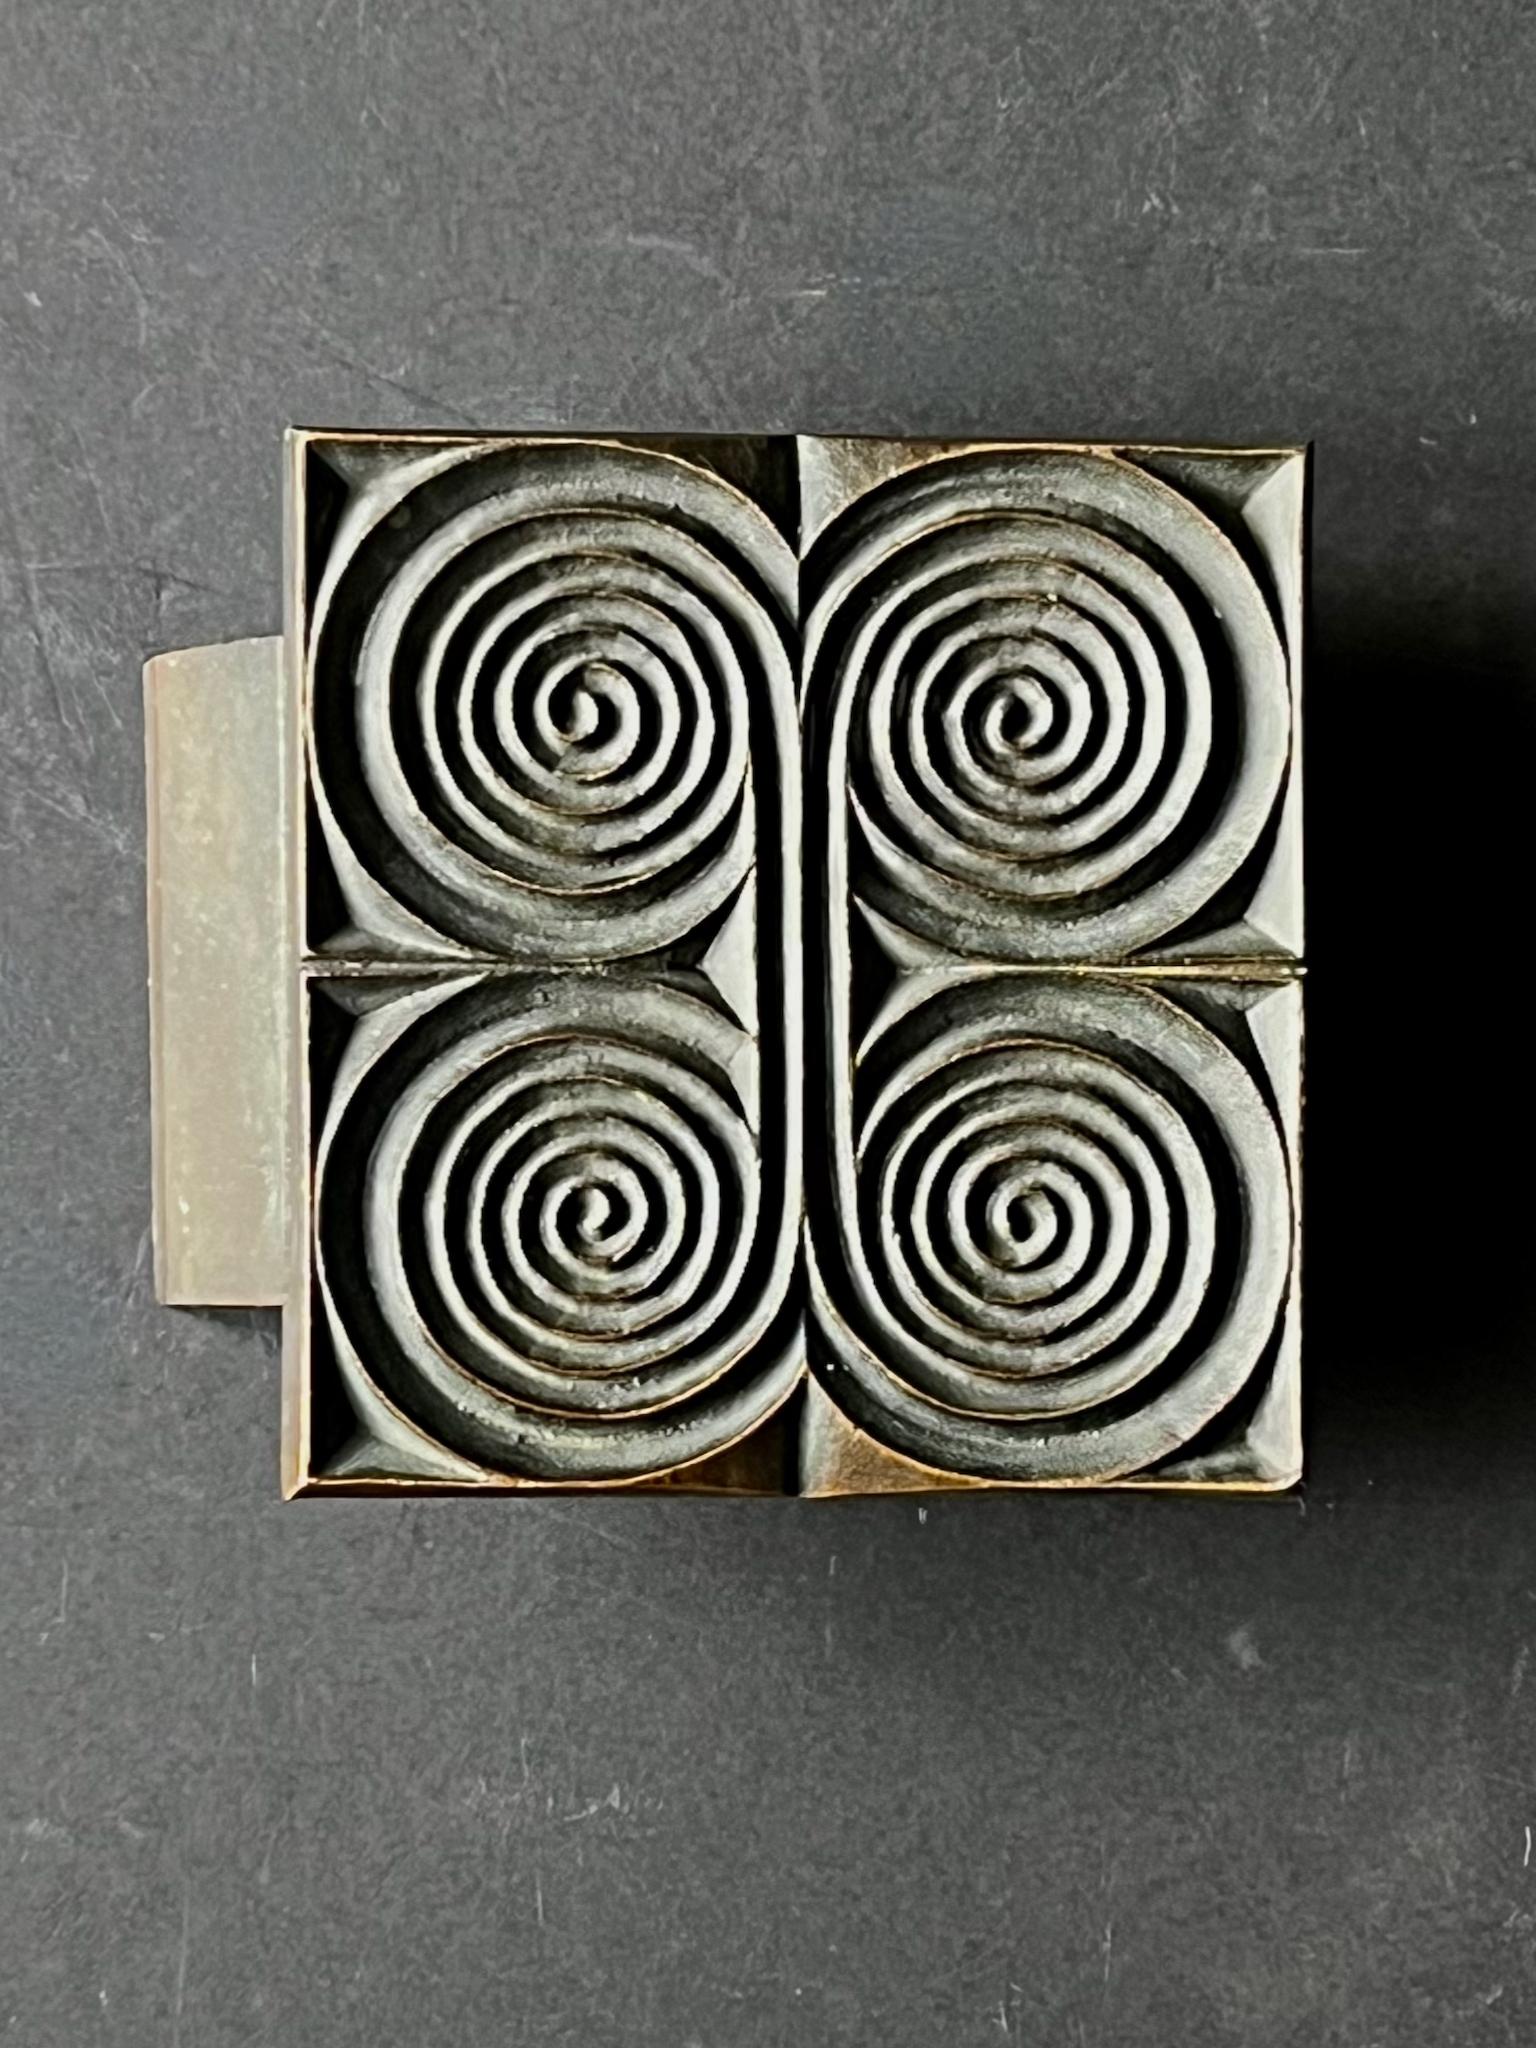 Viereckiger Türdrücker aus Bronzeguss mit erhabenem Spiralmuster. Design aus dem 20. Jahrhundert, gefunden in Deutschland.

Das Stück ist in gutem Vintage-Zustand mit einer dunkelbraunen Patina auf dem Metall. Es gibt alters- und gebrauchsbedingte